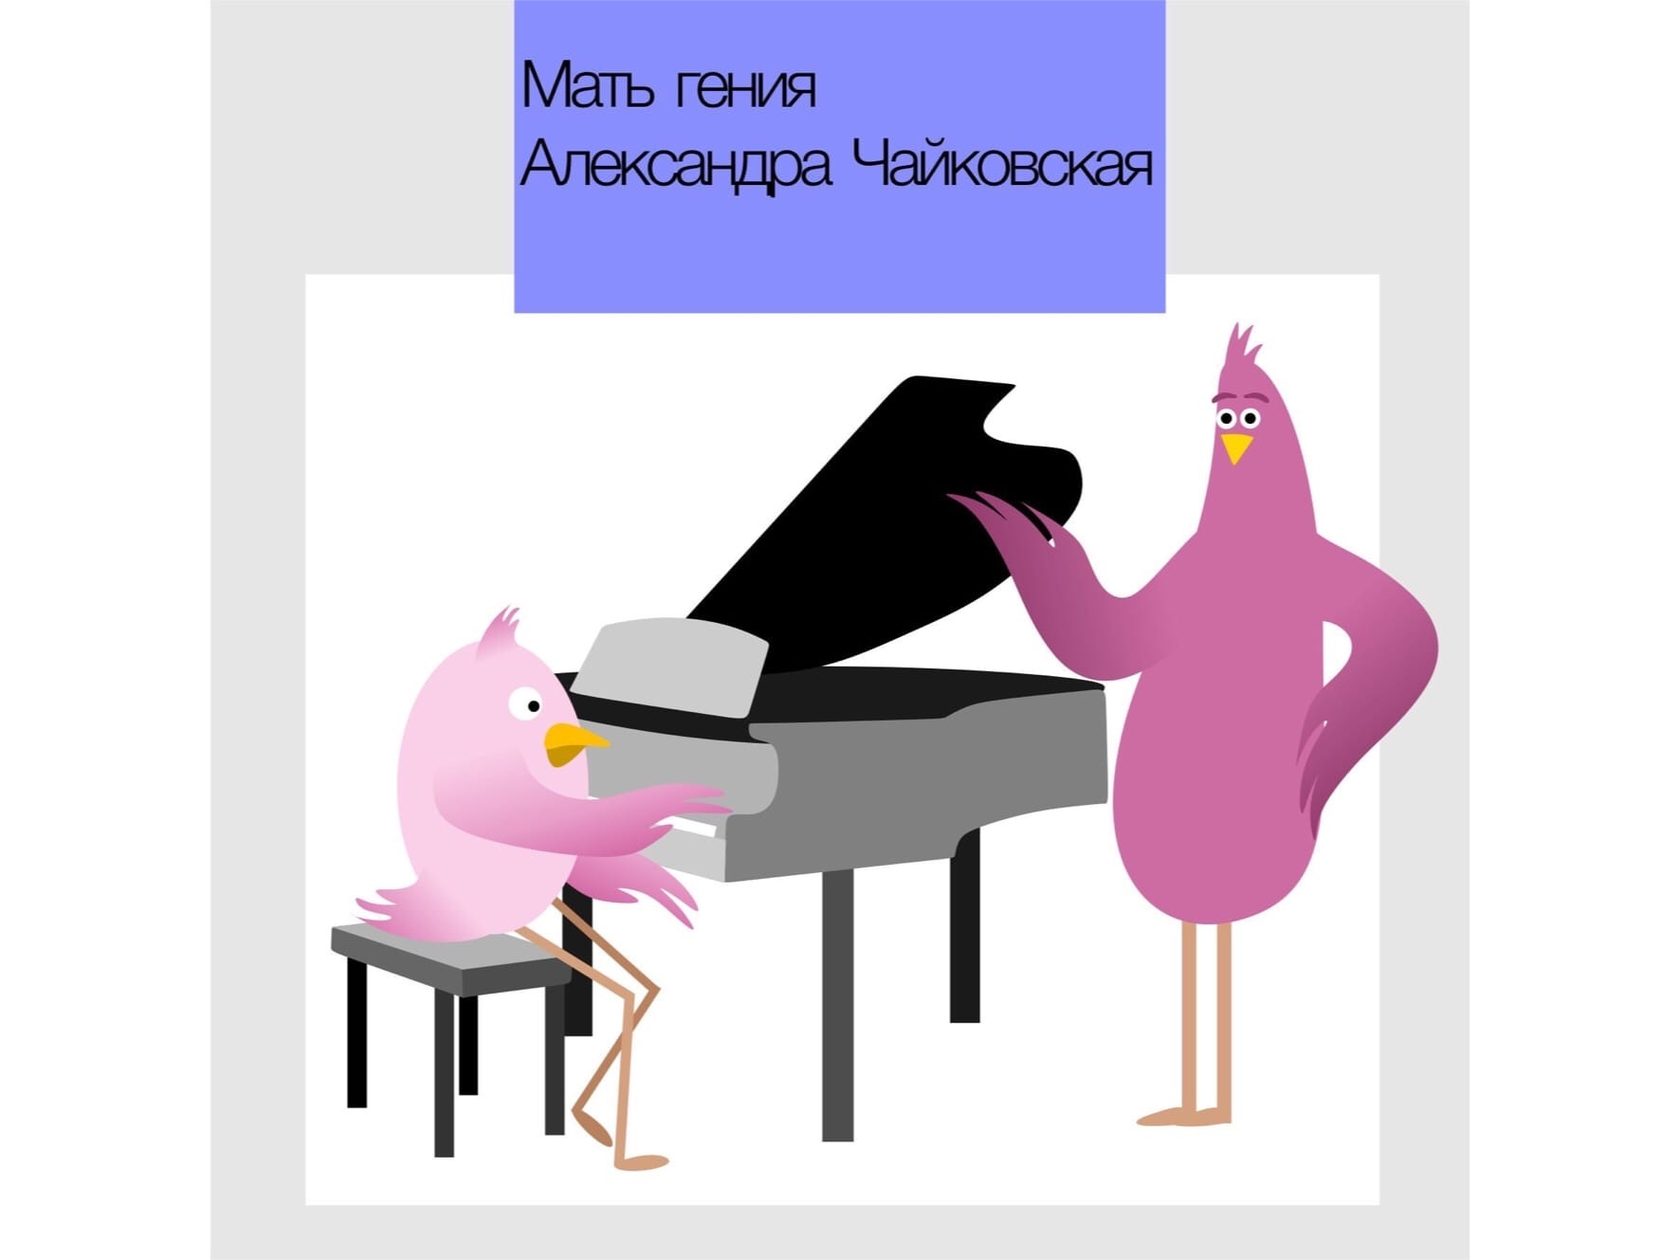 Птица любит играть на фортепиано и математику